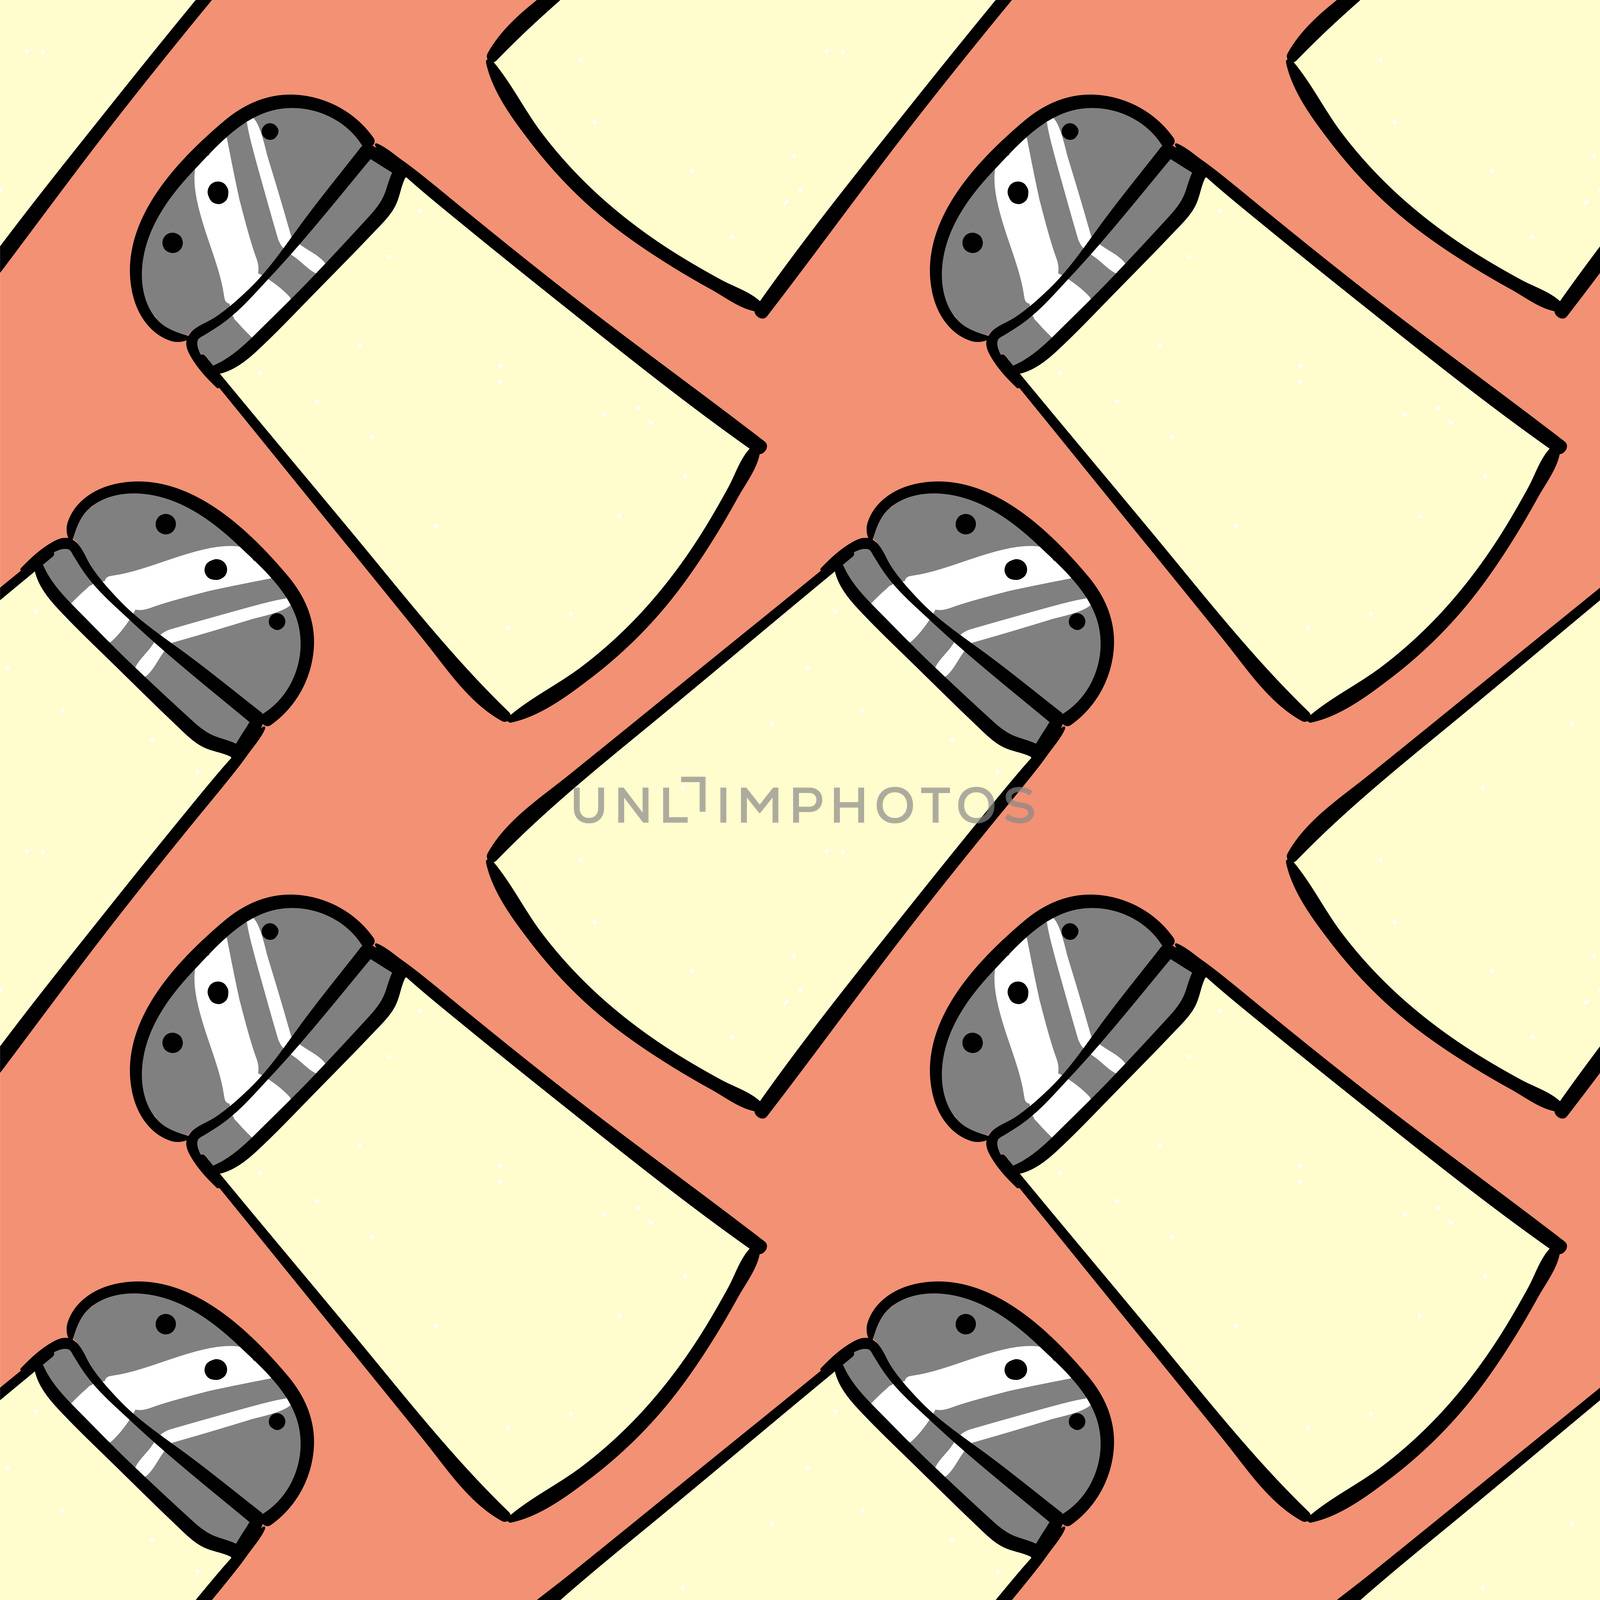 Salt shaker pattern , illustration, vector on white background